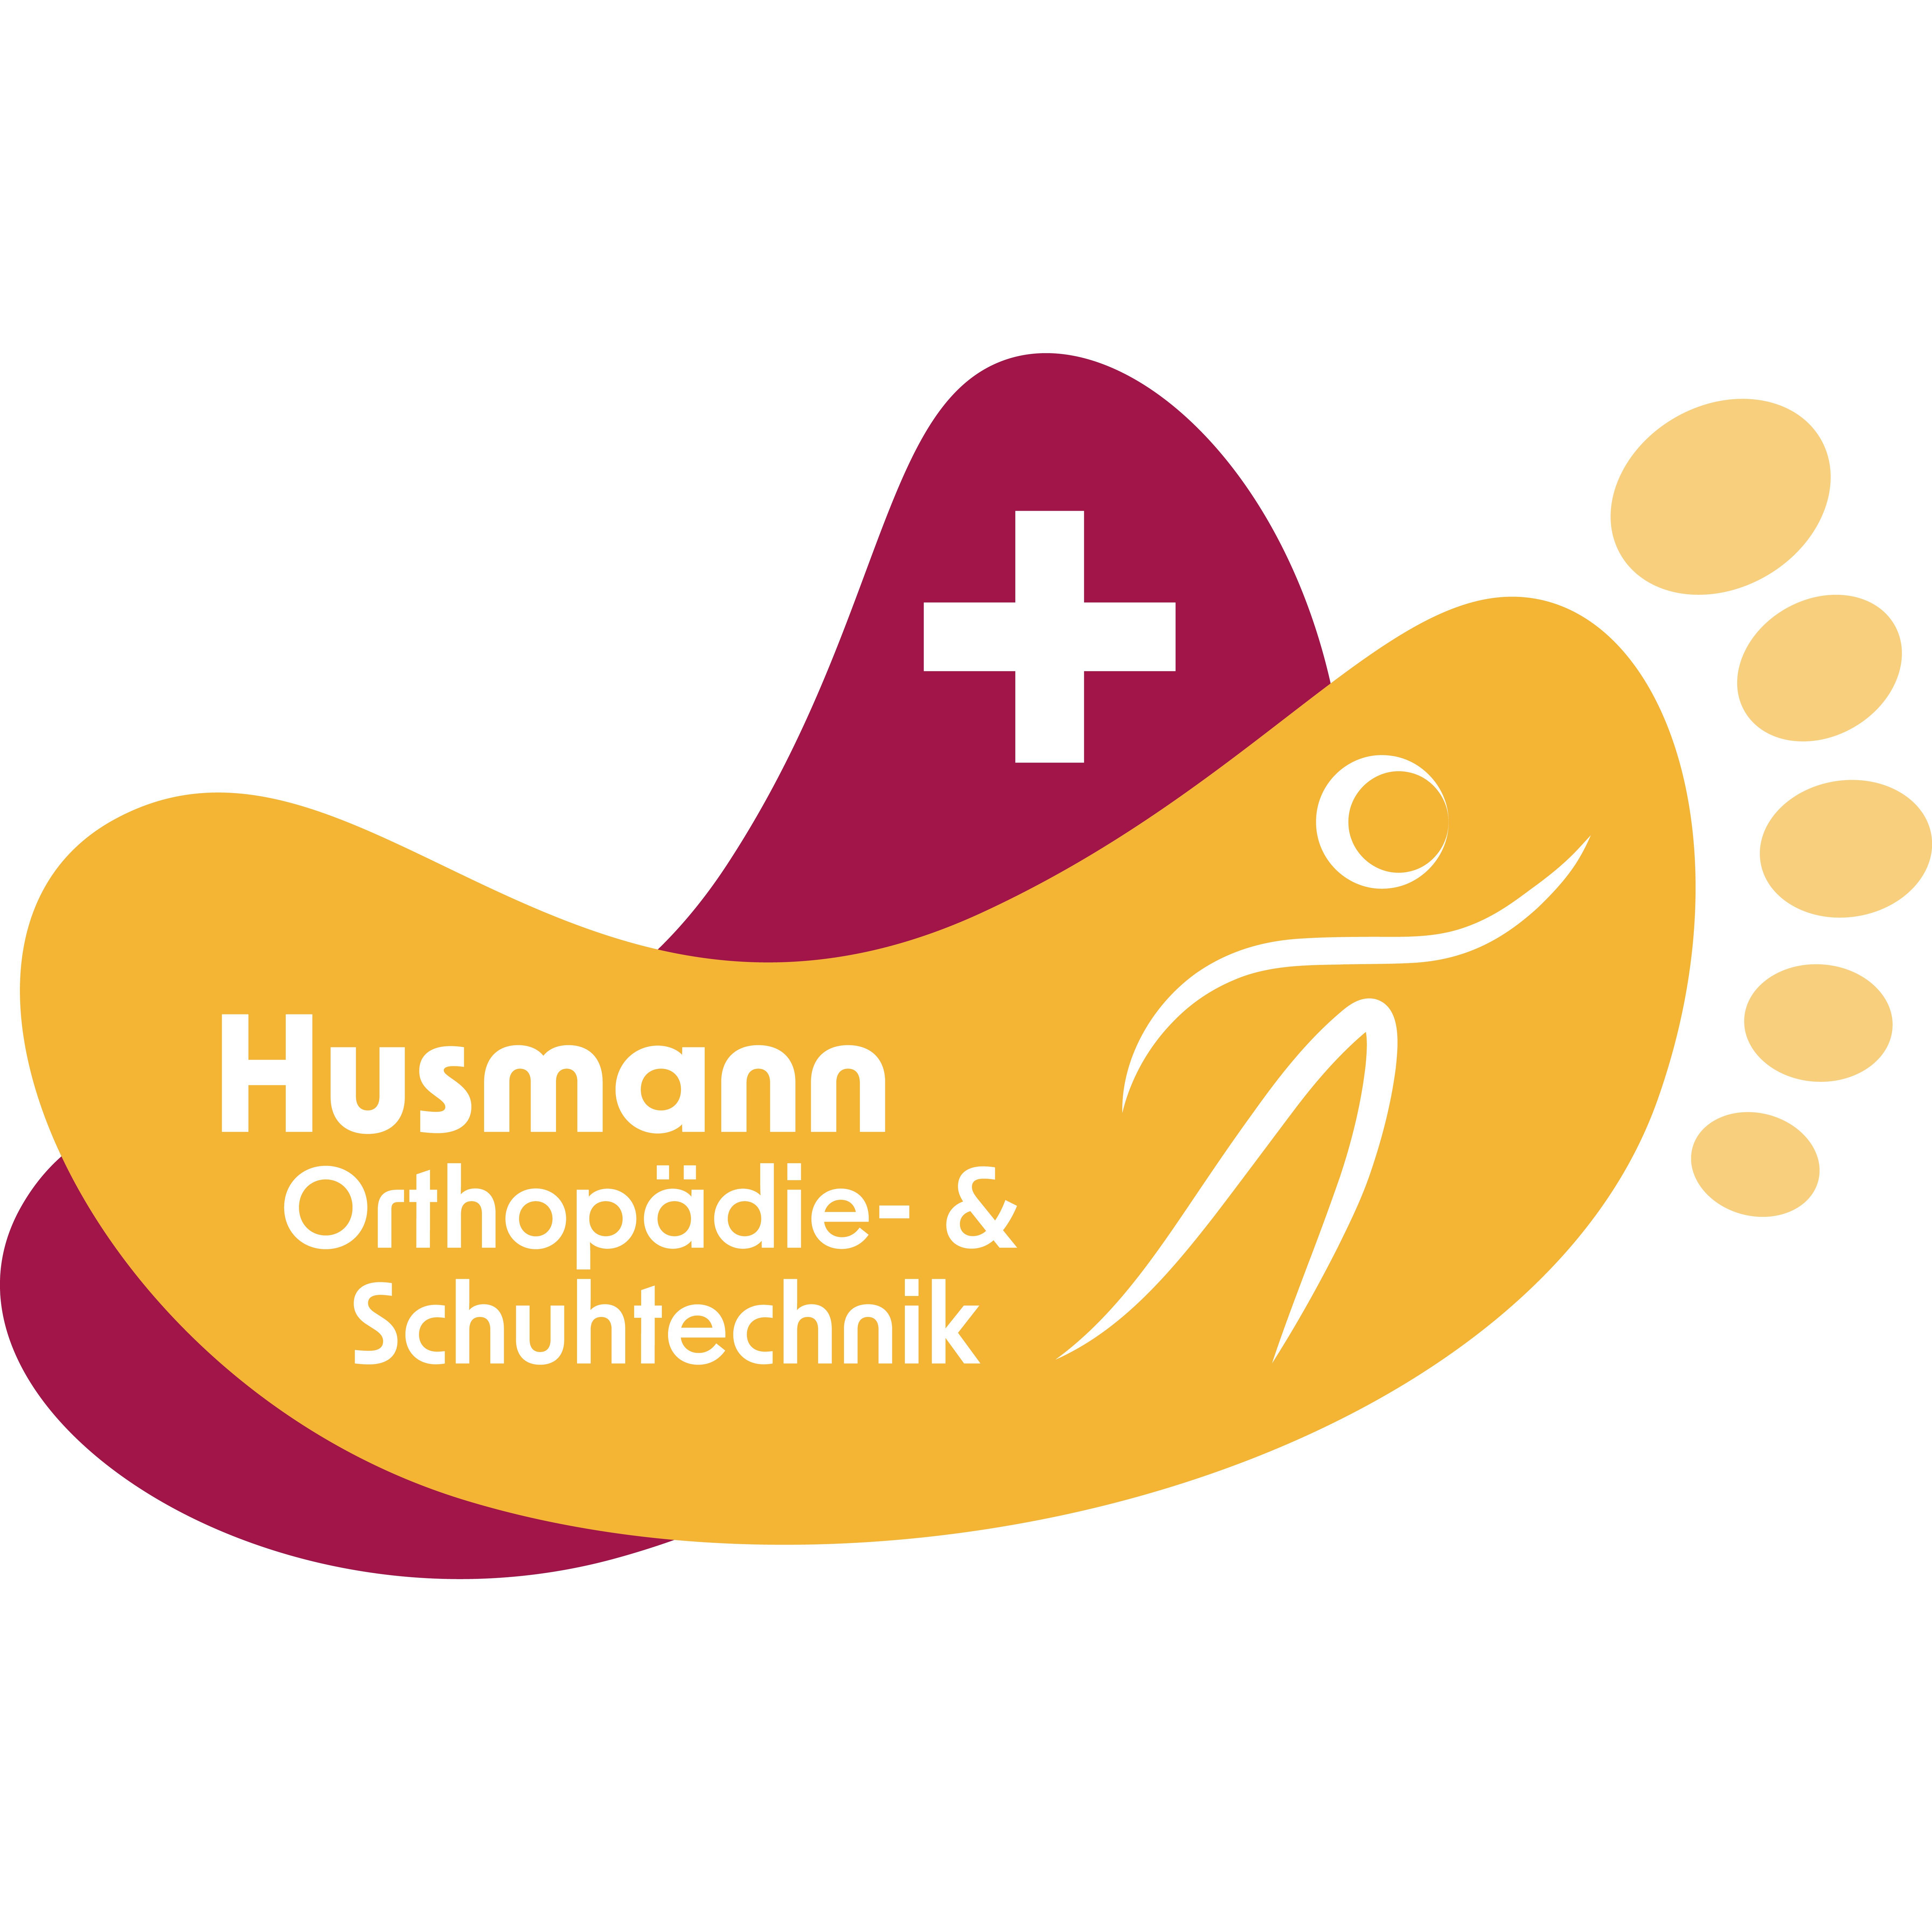 Husmann Orthopädie- & Schuhtechnik in Marklohe - Logo